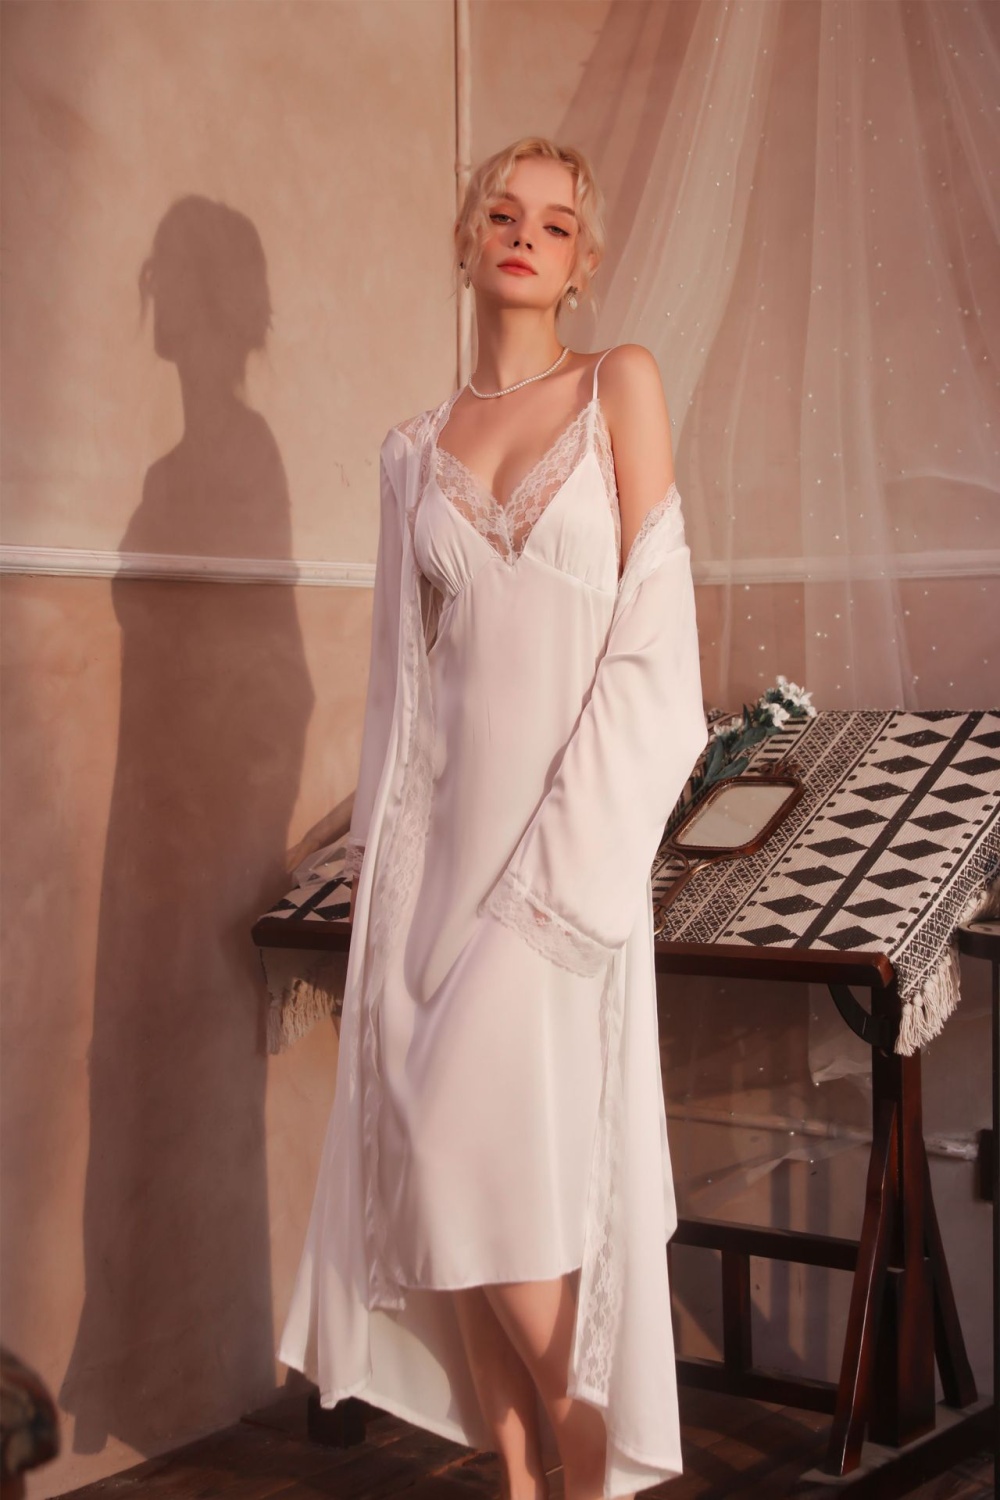 Sexy long nightgown homewear thin pajamas for women